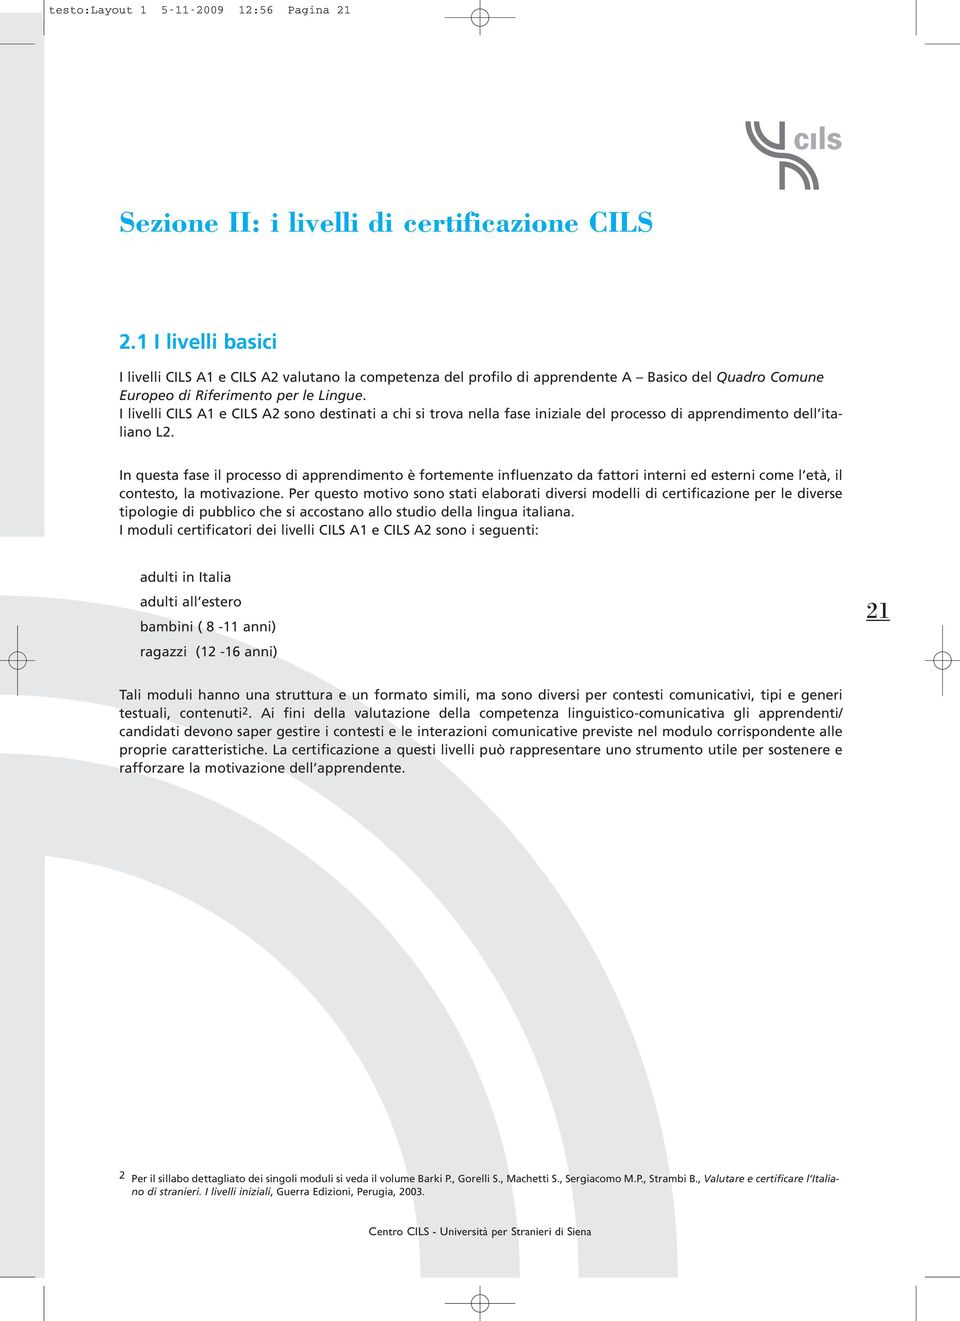 I livelli CILS A1 e CILS A2 sono destinati a chi si trova nella fase iniziale del processo di apprendimento dell italiano L2.